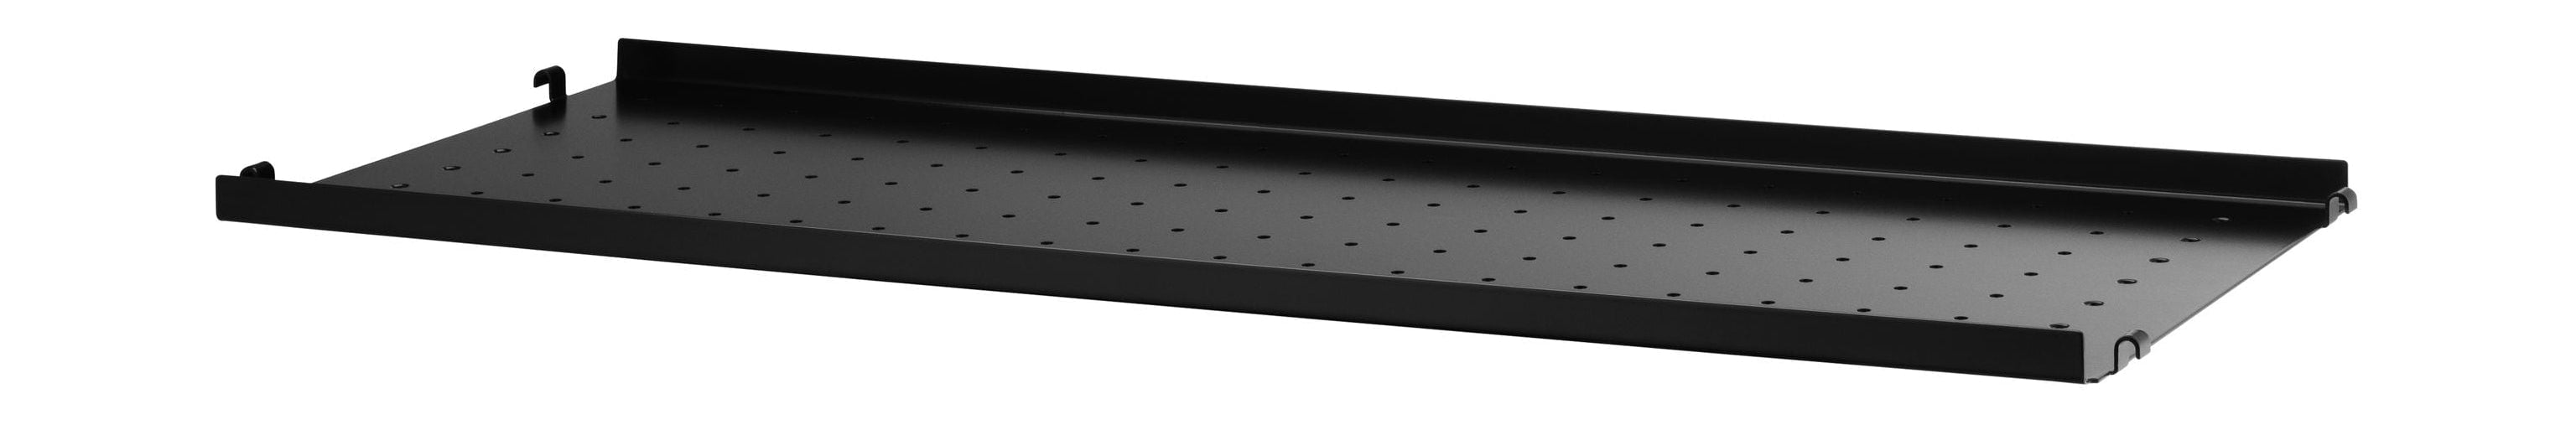 Metalowe szelf metalowy szelf z niską krawędzią 30x78 cm, czarny